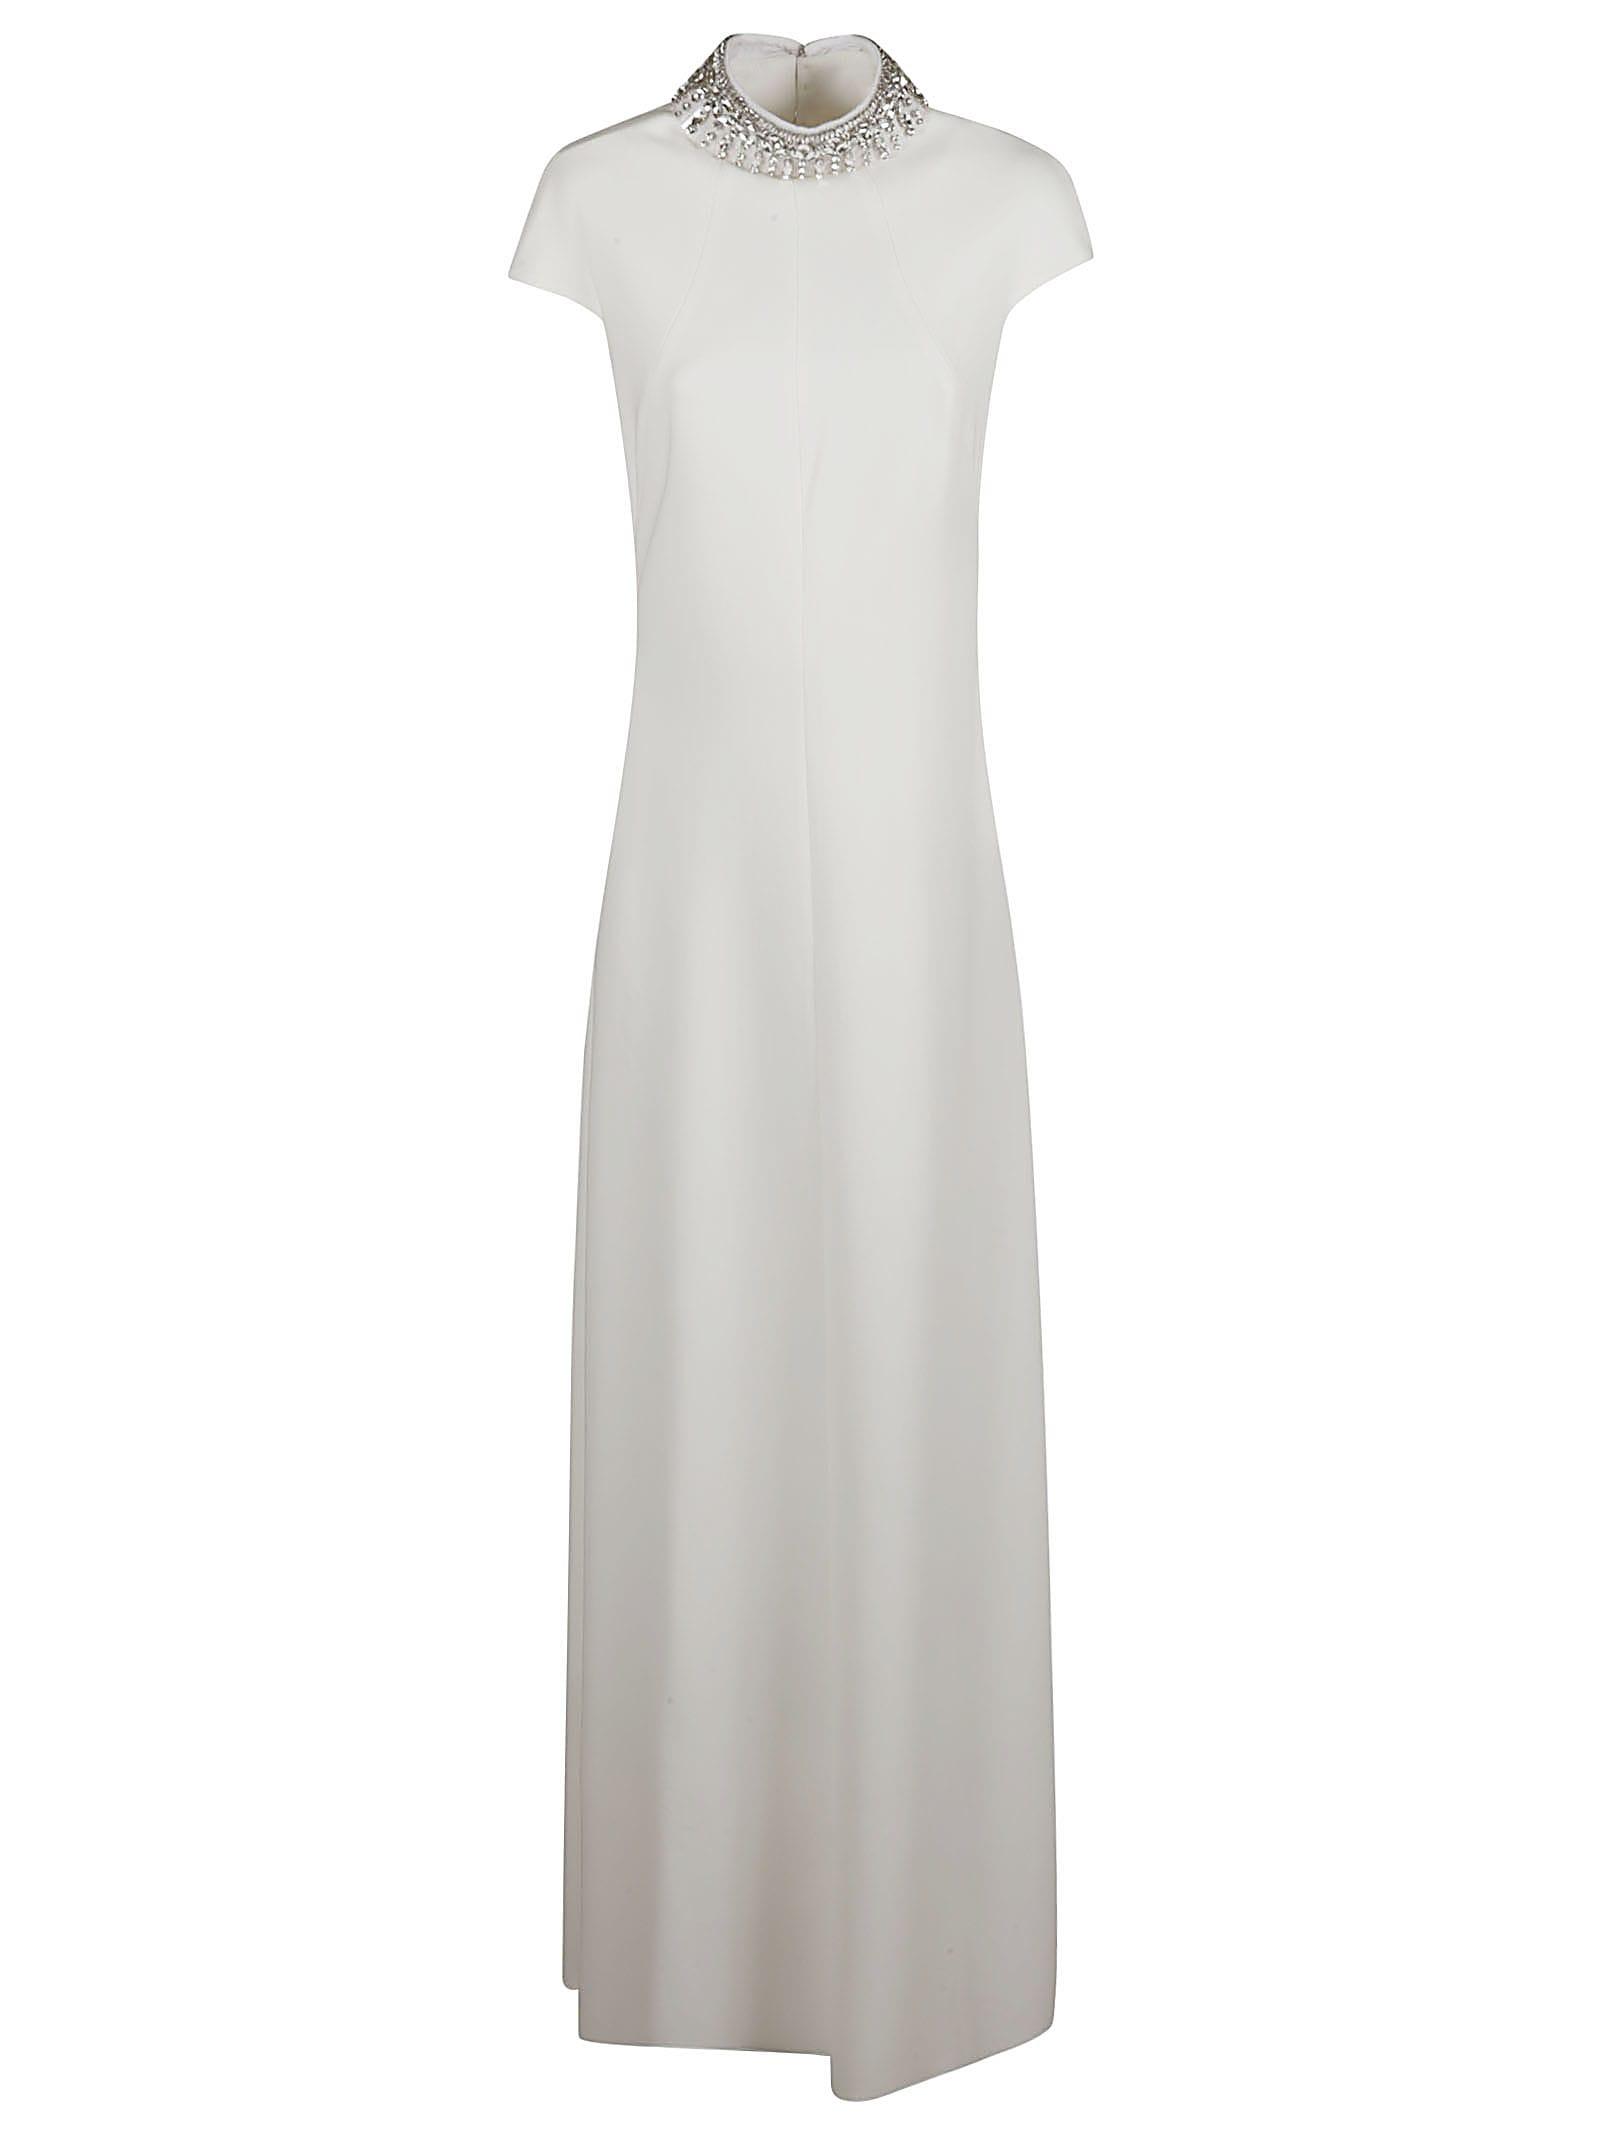 Max Mara Perim Dress in White | Lyst